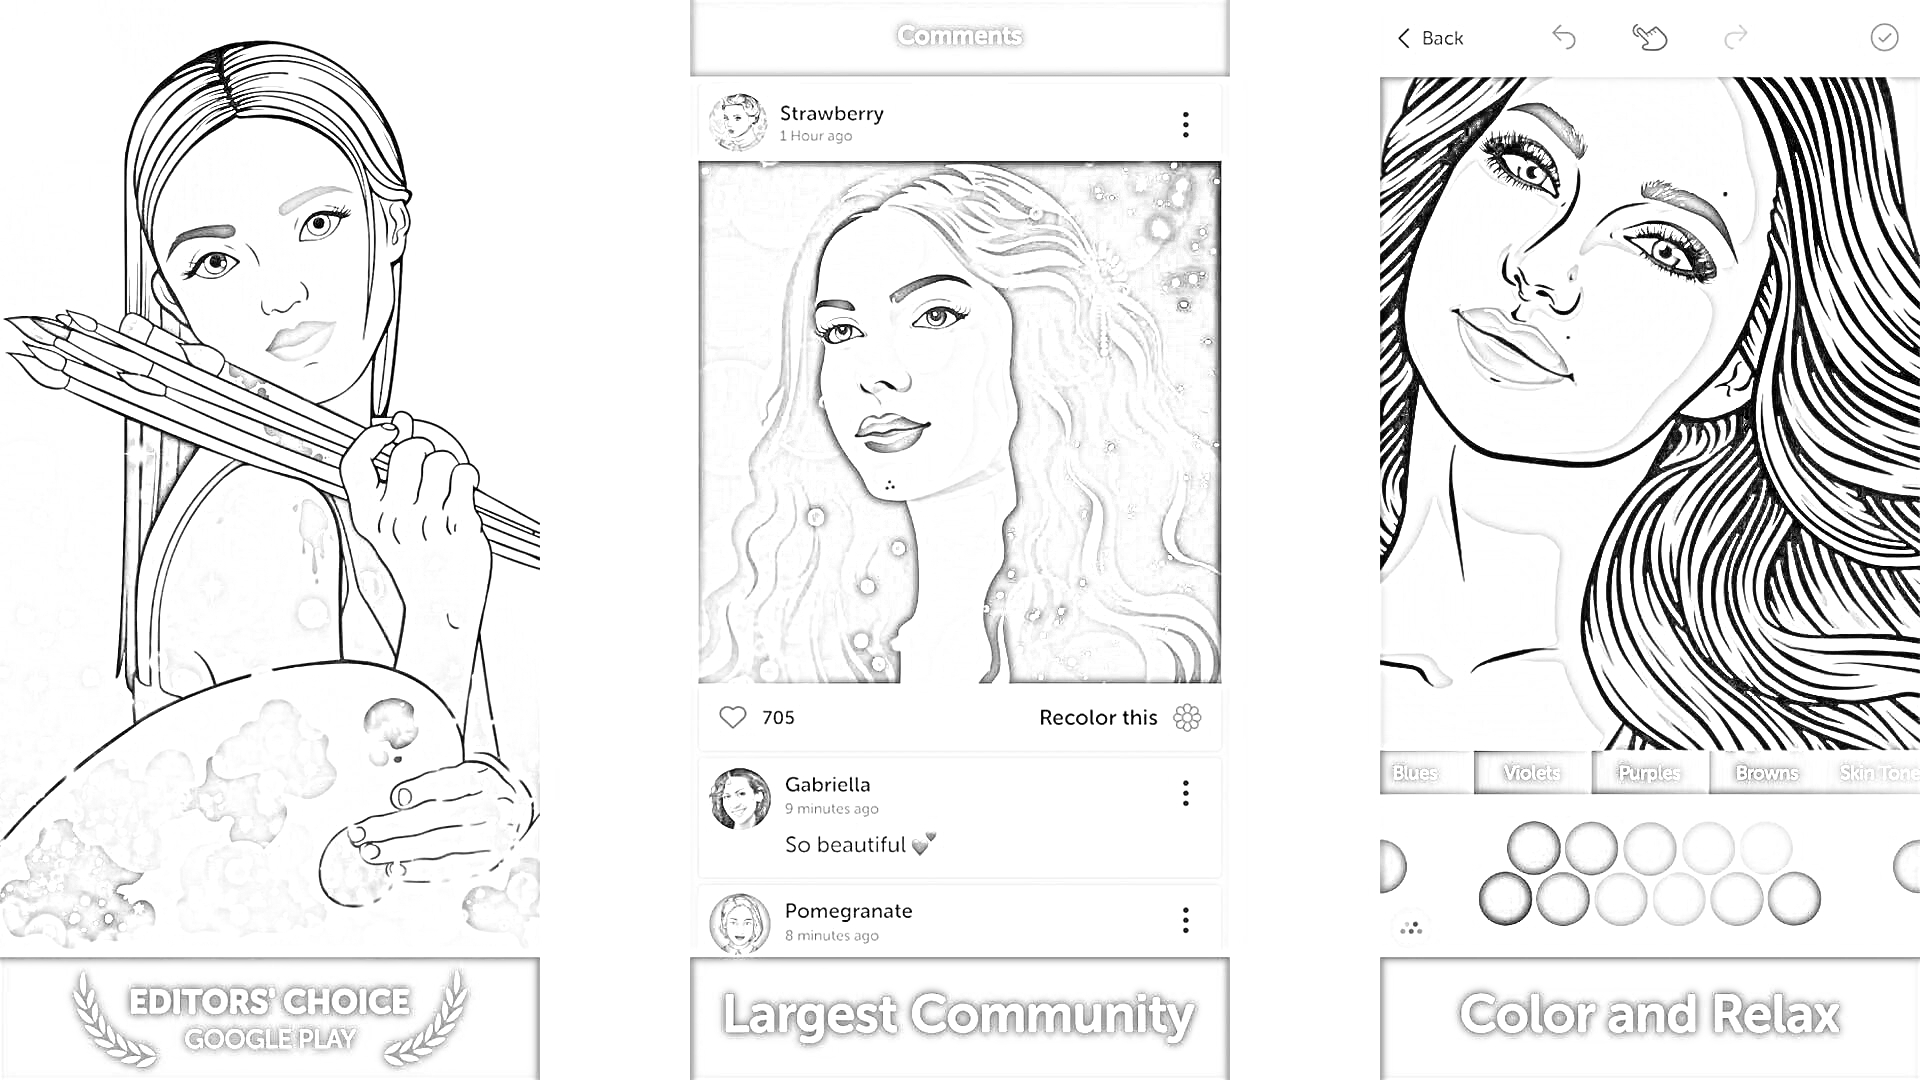 Раскраска приложение для фото с раскраской, включает изображения женщин с художественными инструментами и палитрами, социальное взаимодействие пользователей и опции для раскрашивания